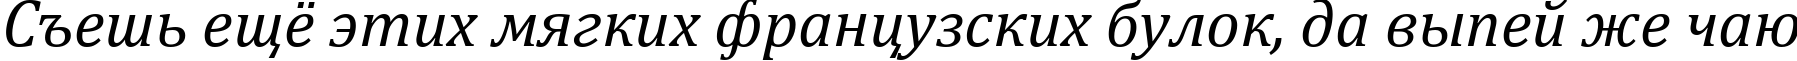 Пример написания шрифтом Cambria Italic текста на русском